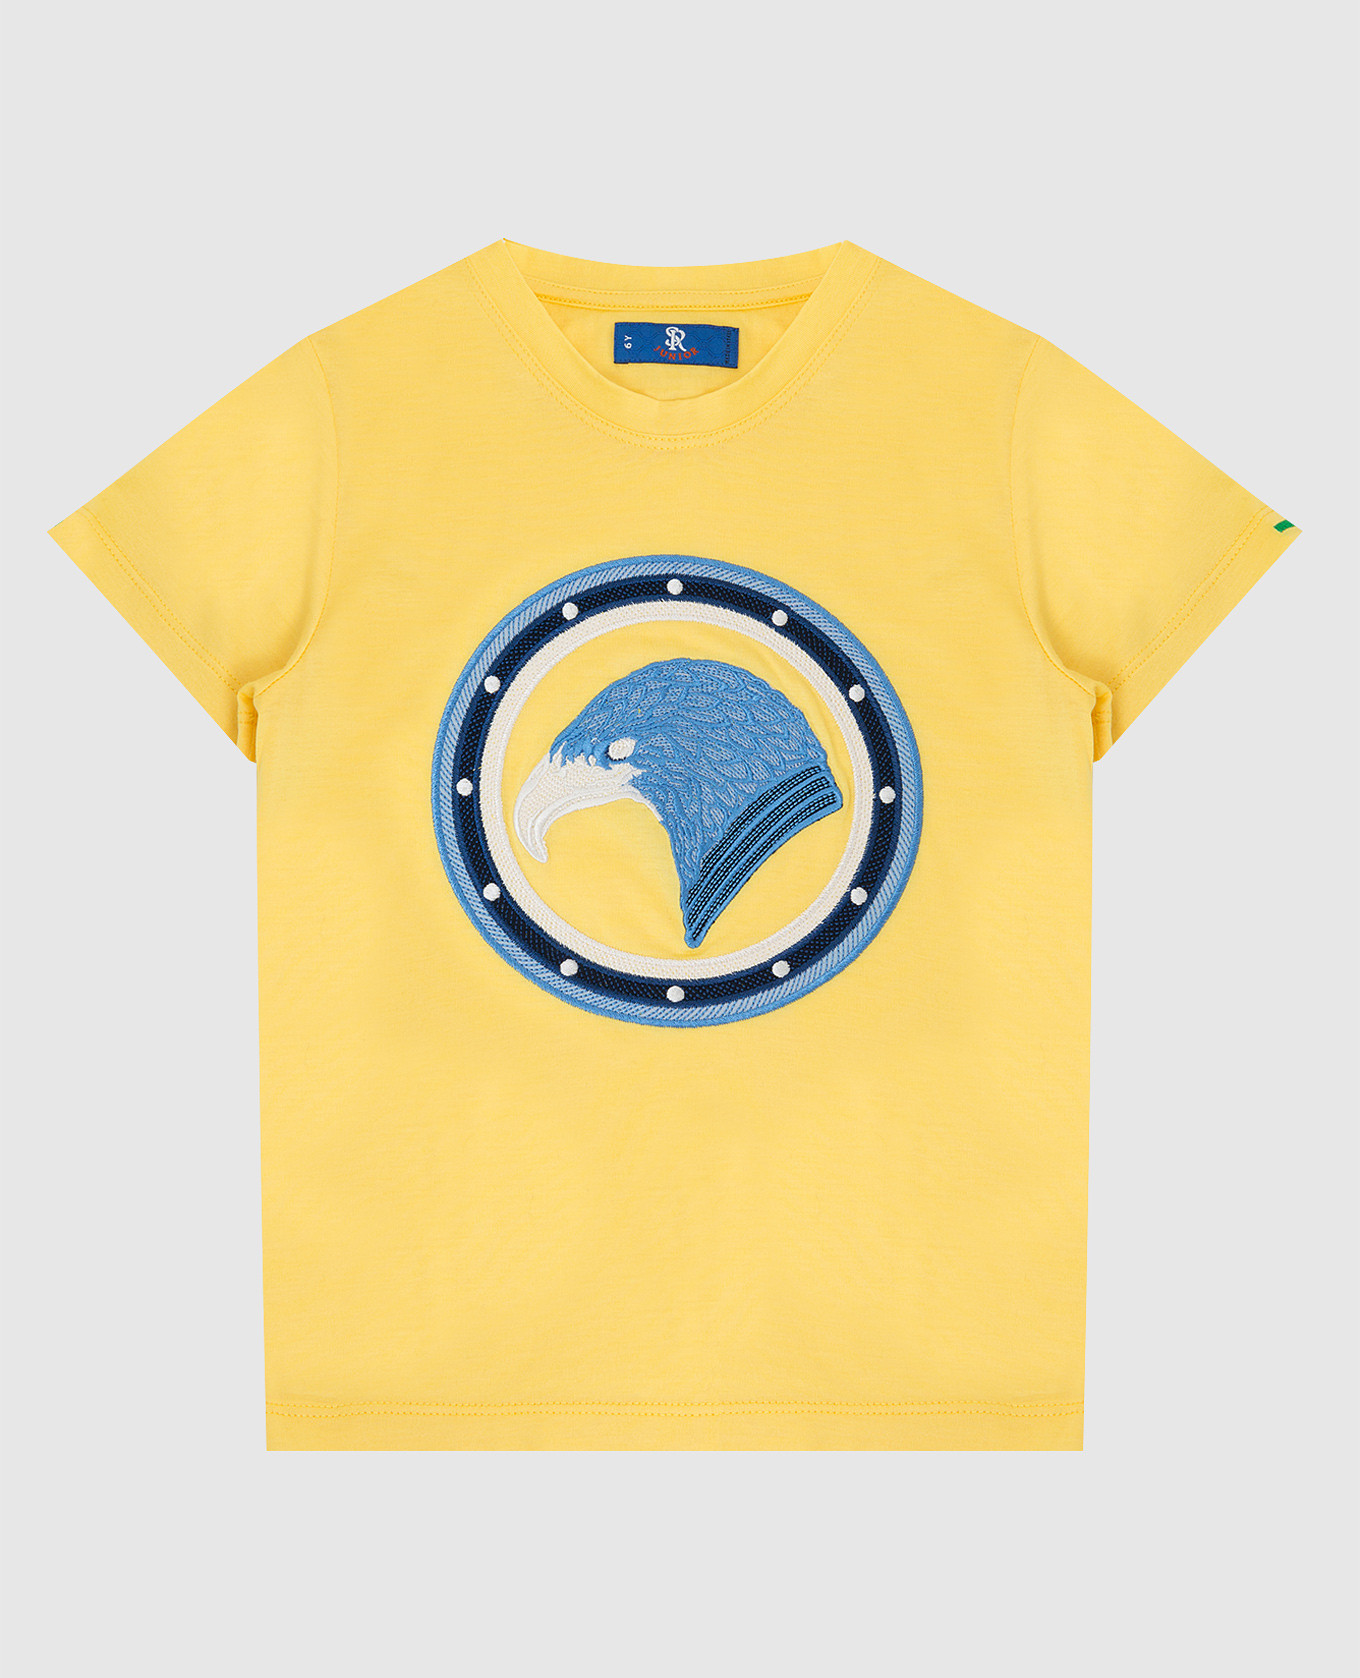 Детская желтая футболка с контрастной вышивкой